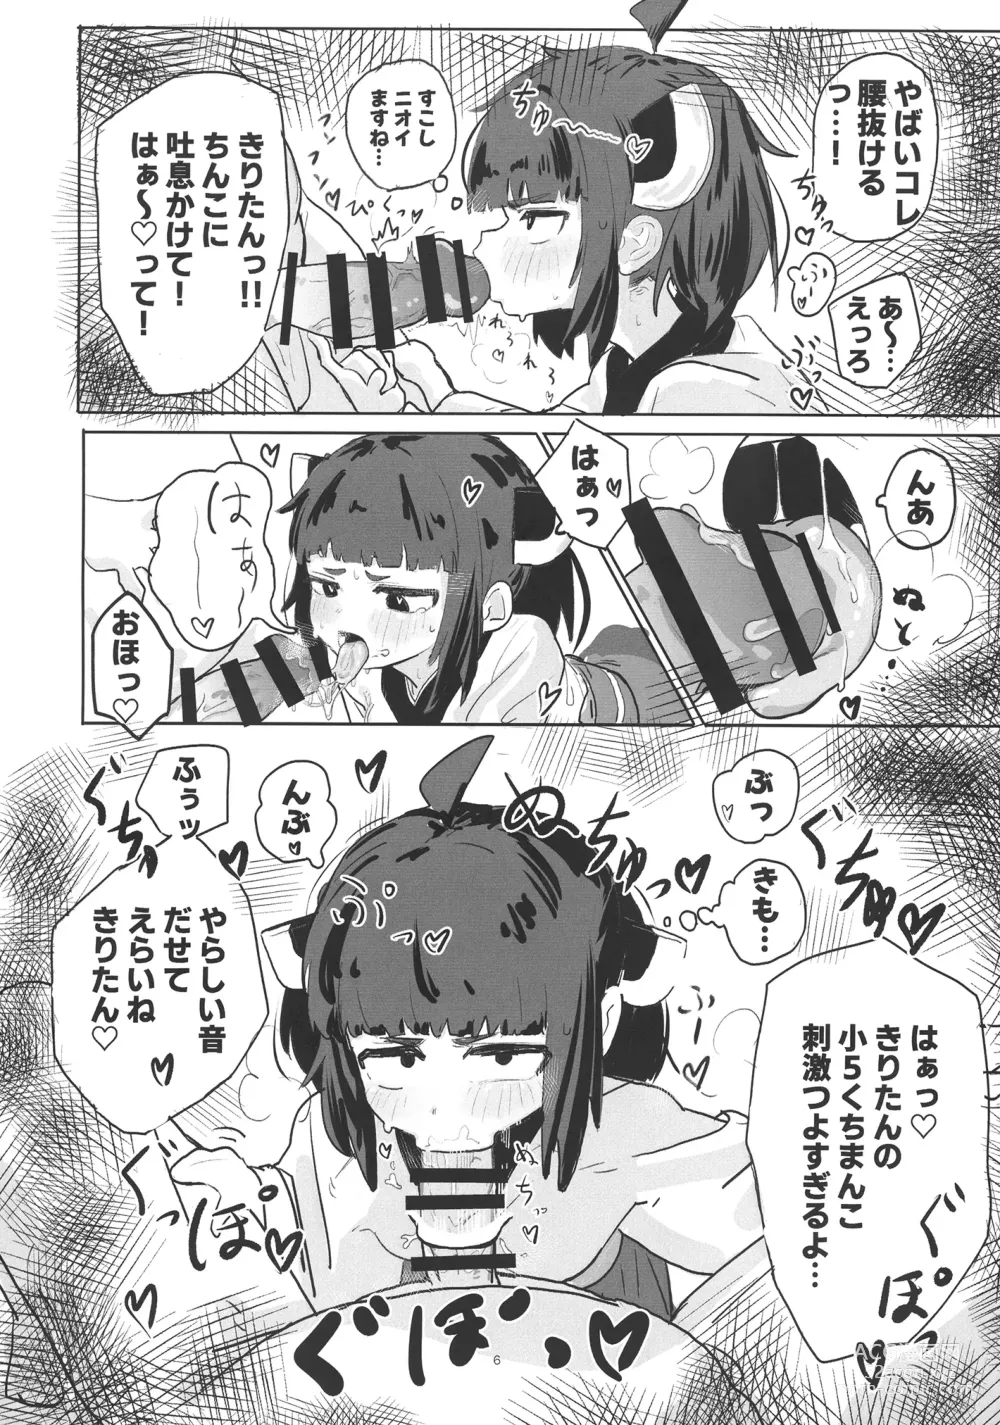 Page 6 of doujinshi Kiri tanto etchi shitai!